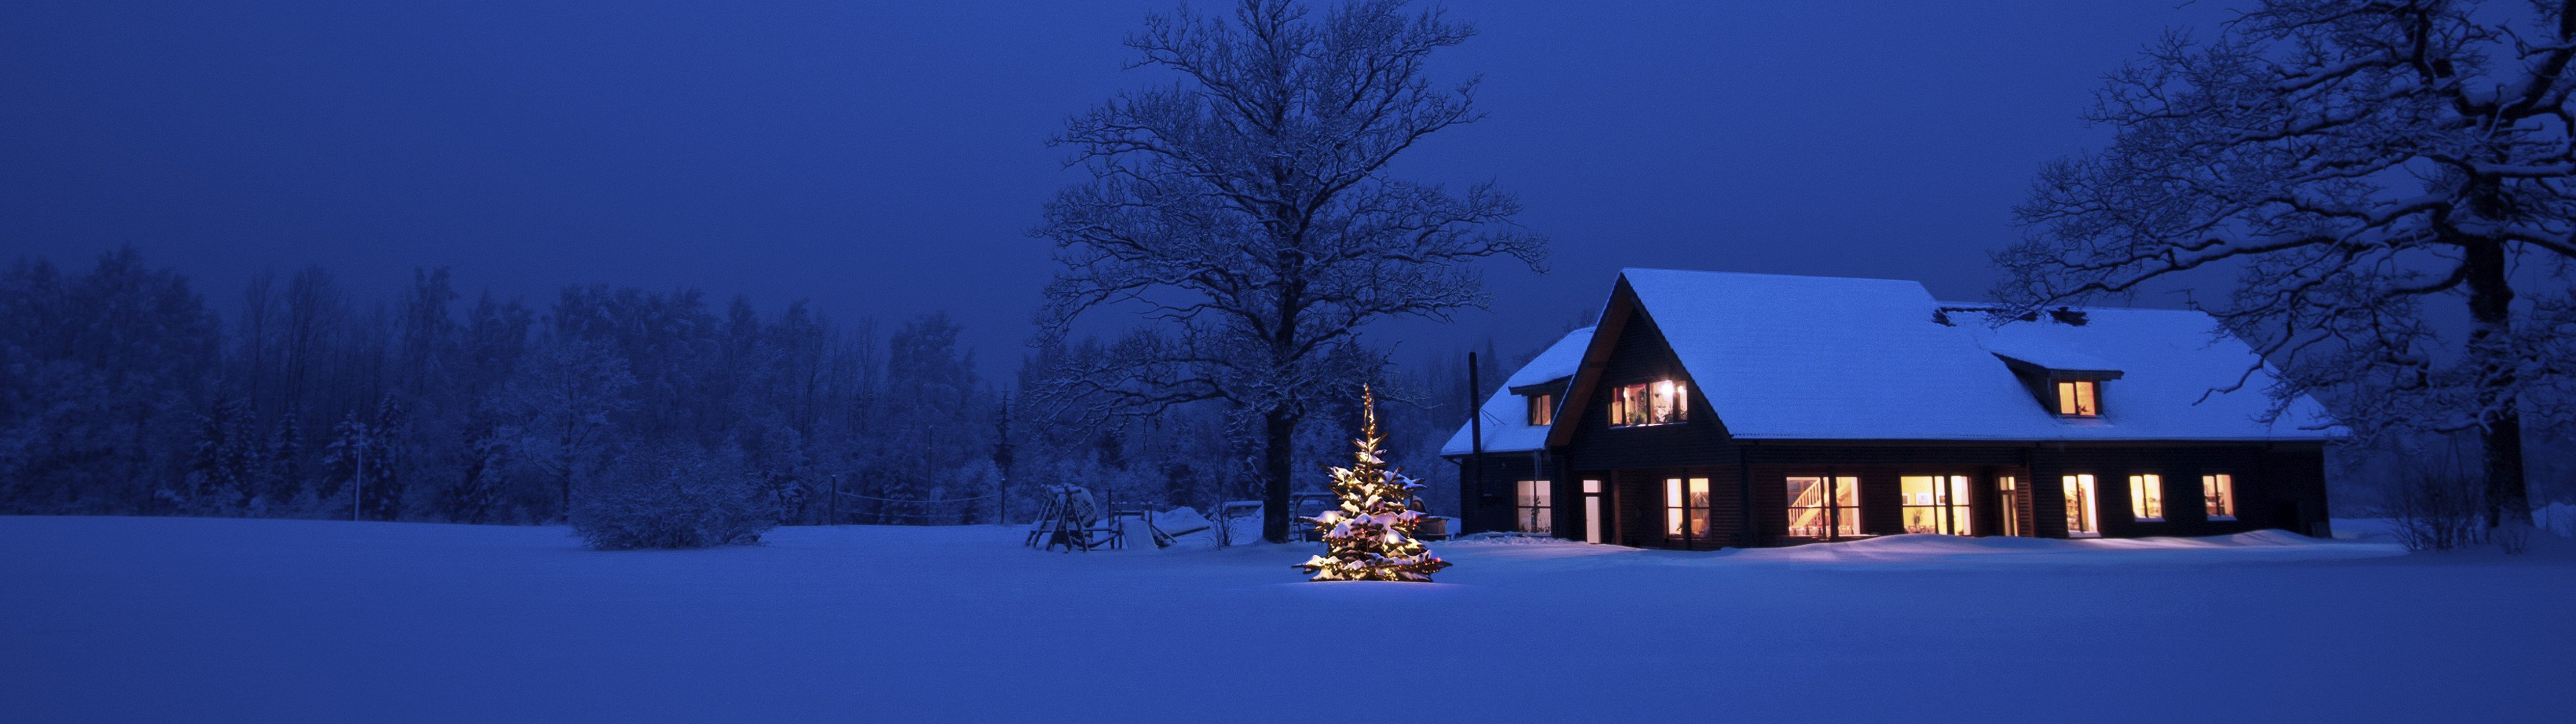 Cây Giáng Sinh và Ngôi Nhà Ấm Cúng với Tuyết Trắng: Hình ảnh cây Giáng sinh và ngôi nhà ấm cúng với tuyết trắng luôn mang đến cho chúng ta một cảm giác yên bình và đầm ấm. Hãy cùng chiêm ngưỡng những bức hình đẹp nhất về cây Noel và ngôi nhà trang trí đầy sáng tạo để tạo nên khung cảnh đặc trưng của mùa lễ hội này.